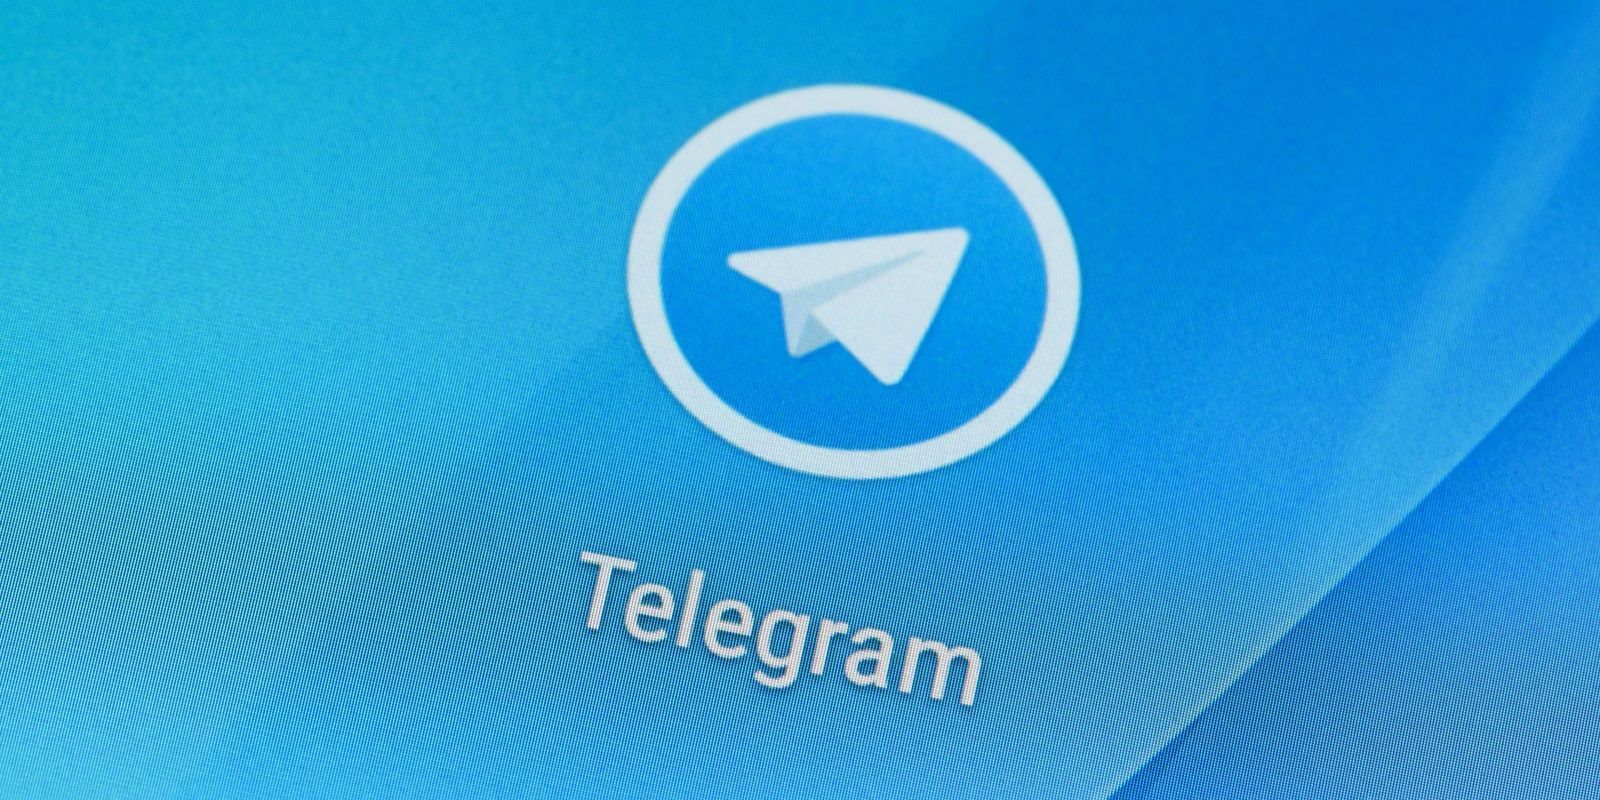 Telegram répond aux investisseurs suite à l'action de la SEC